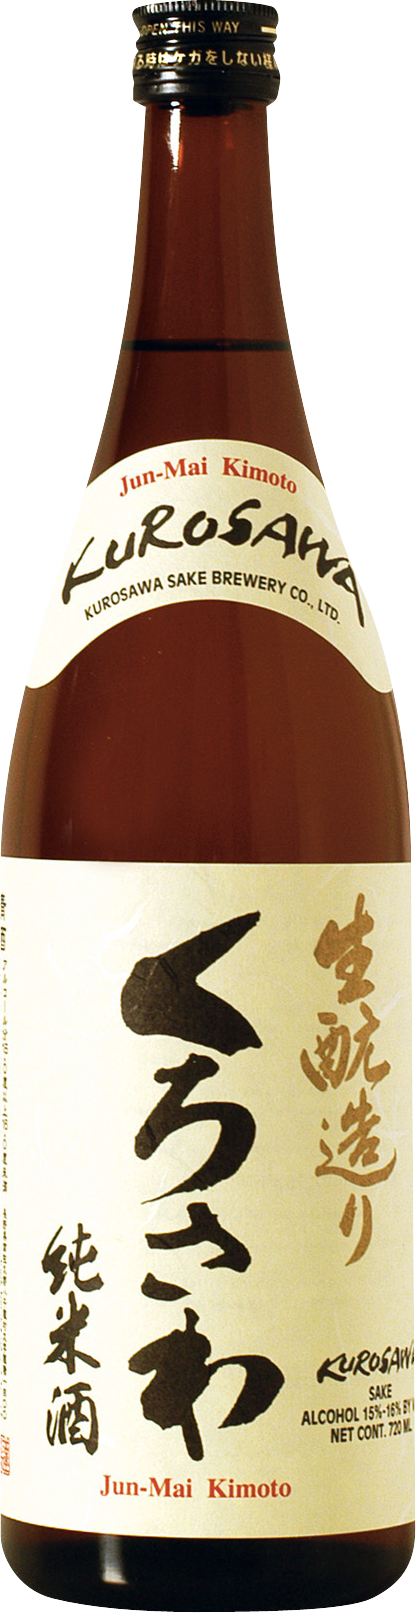 kurosawa sake: kurosawa junmai kimoto